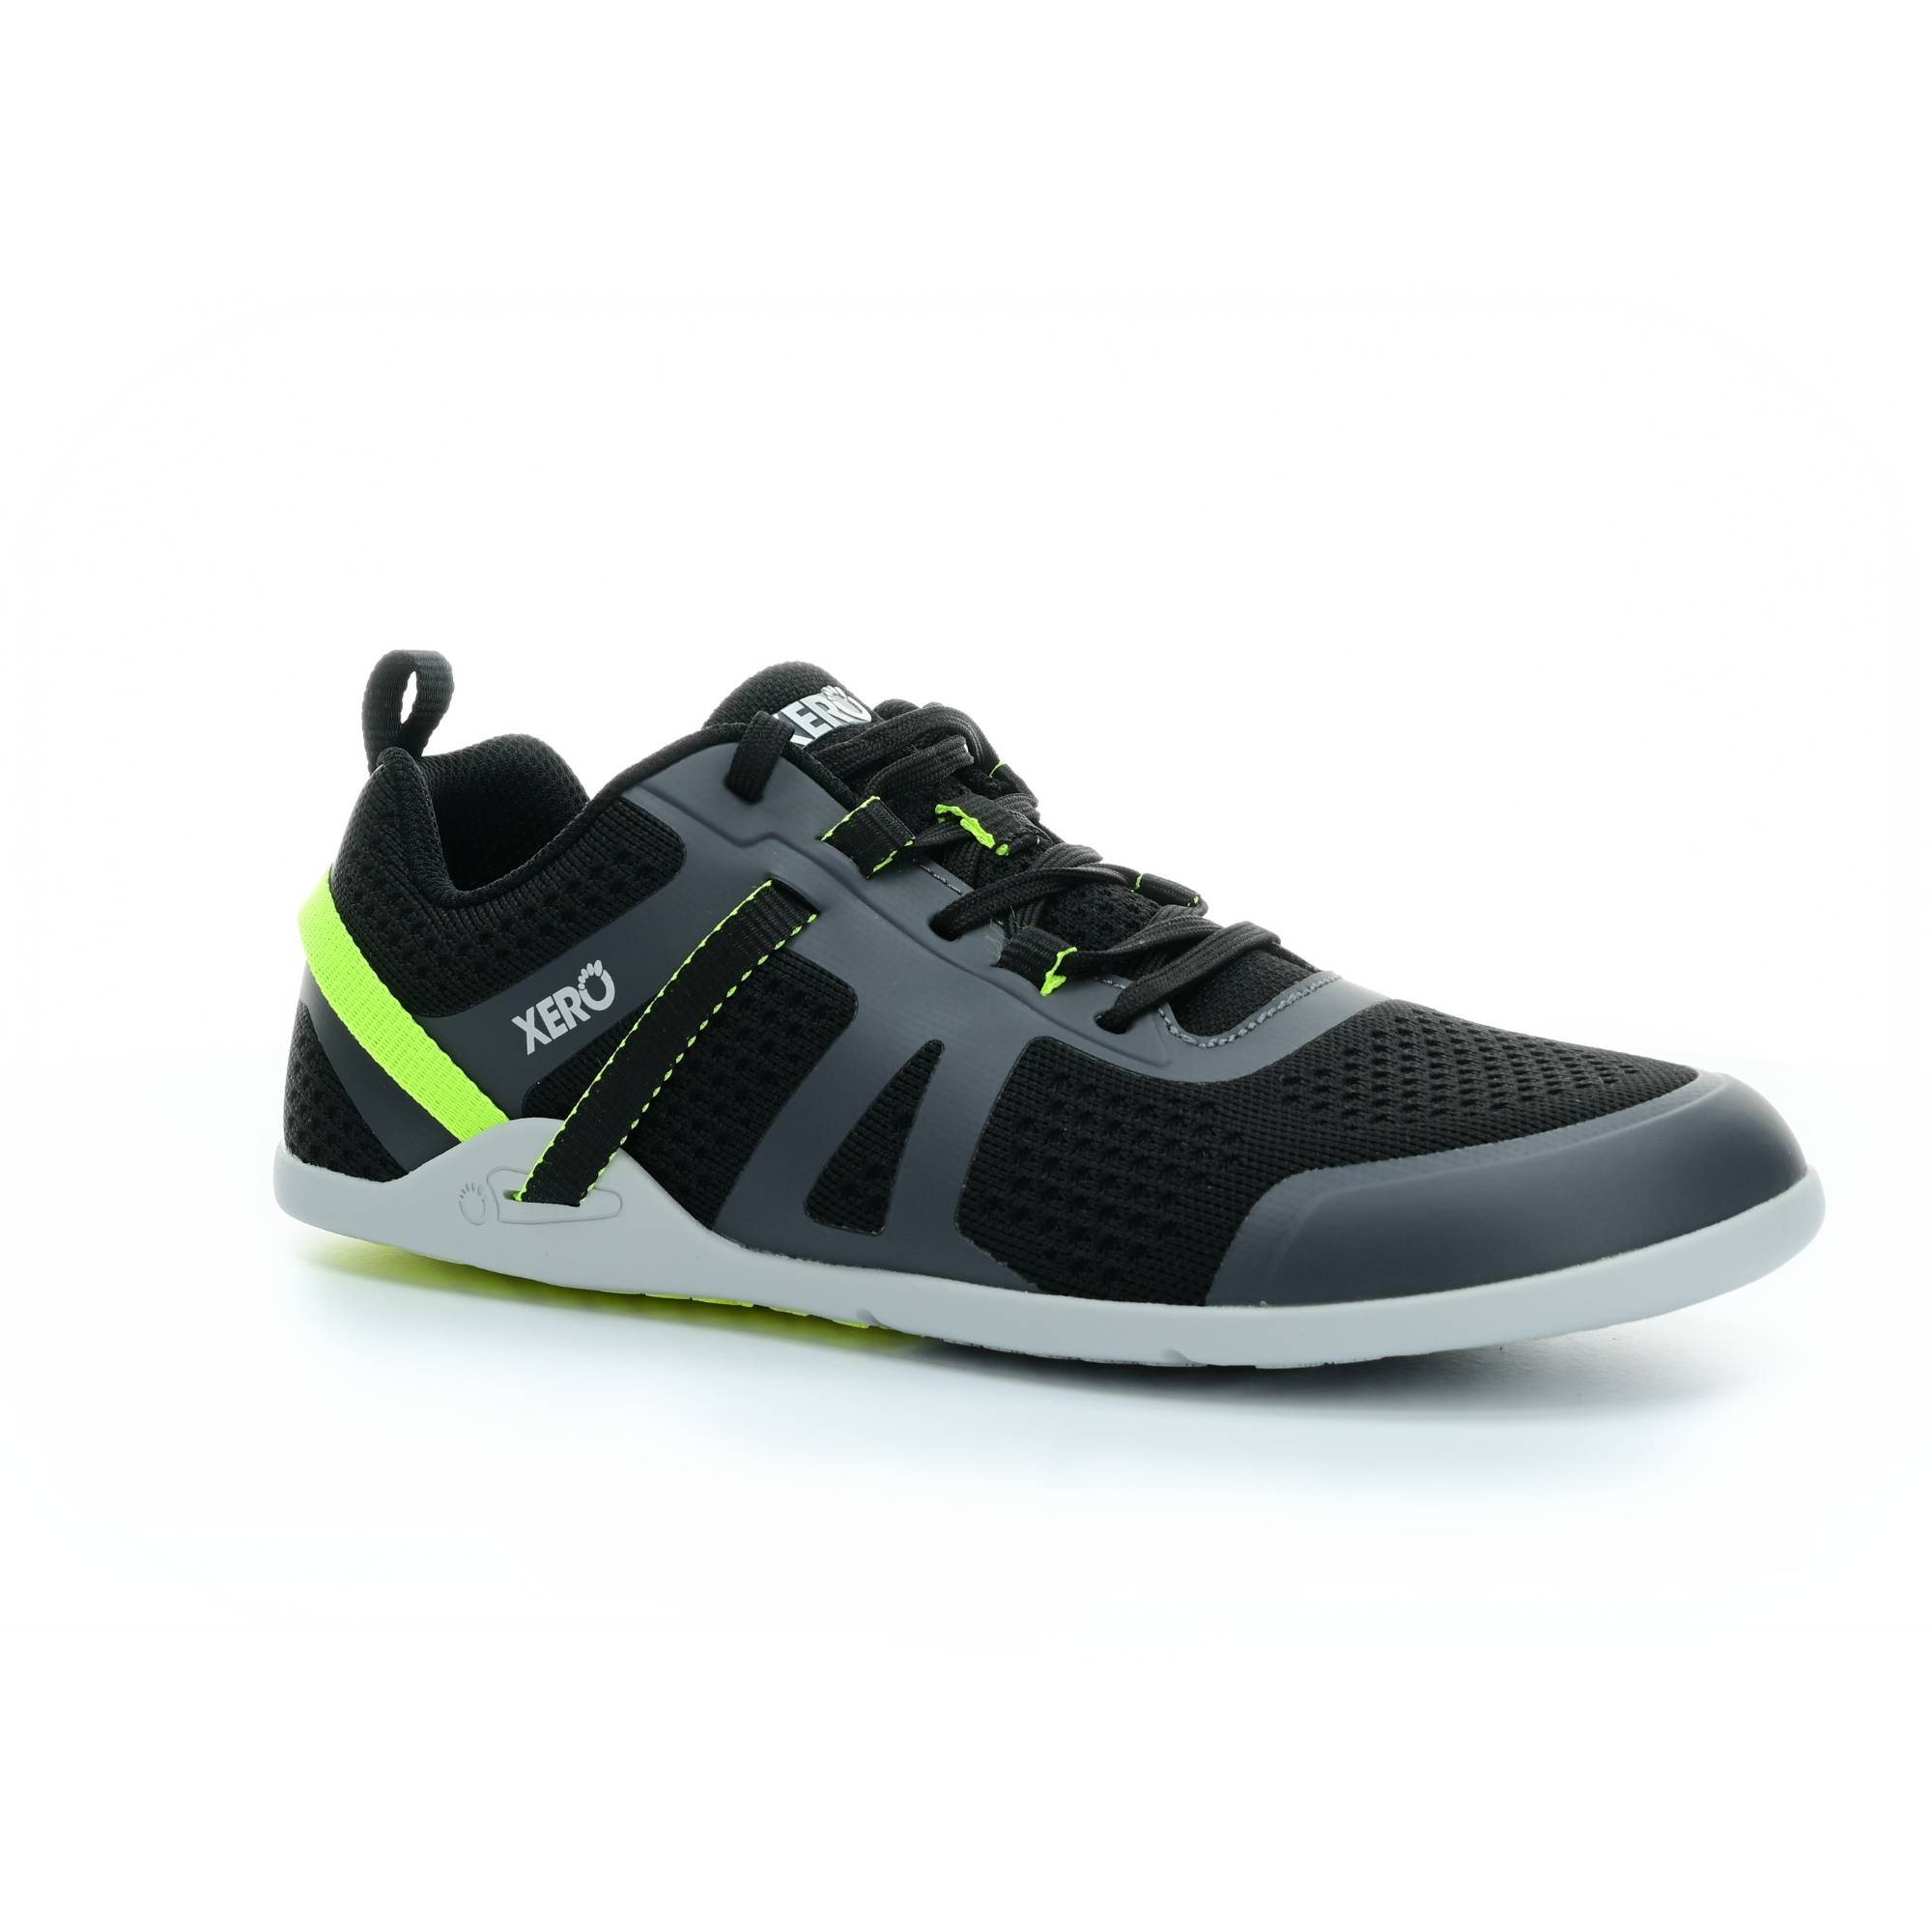 Levně sportovní tenisky Xero shoes Prio Neo Asphalt/Black M